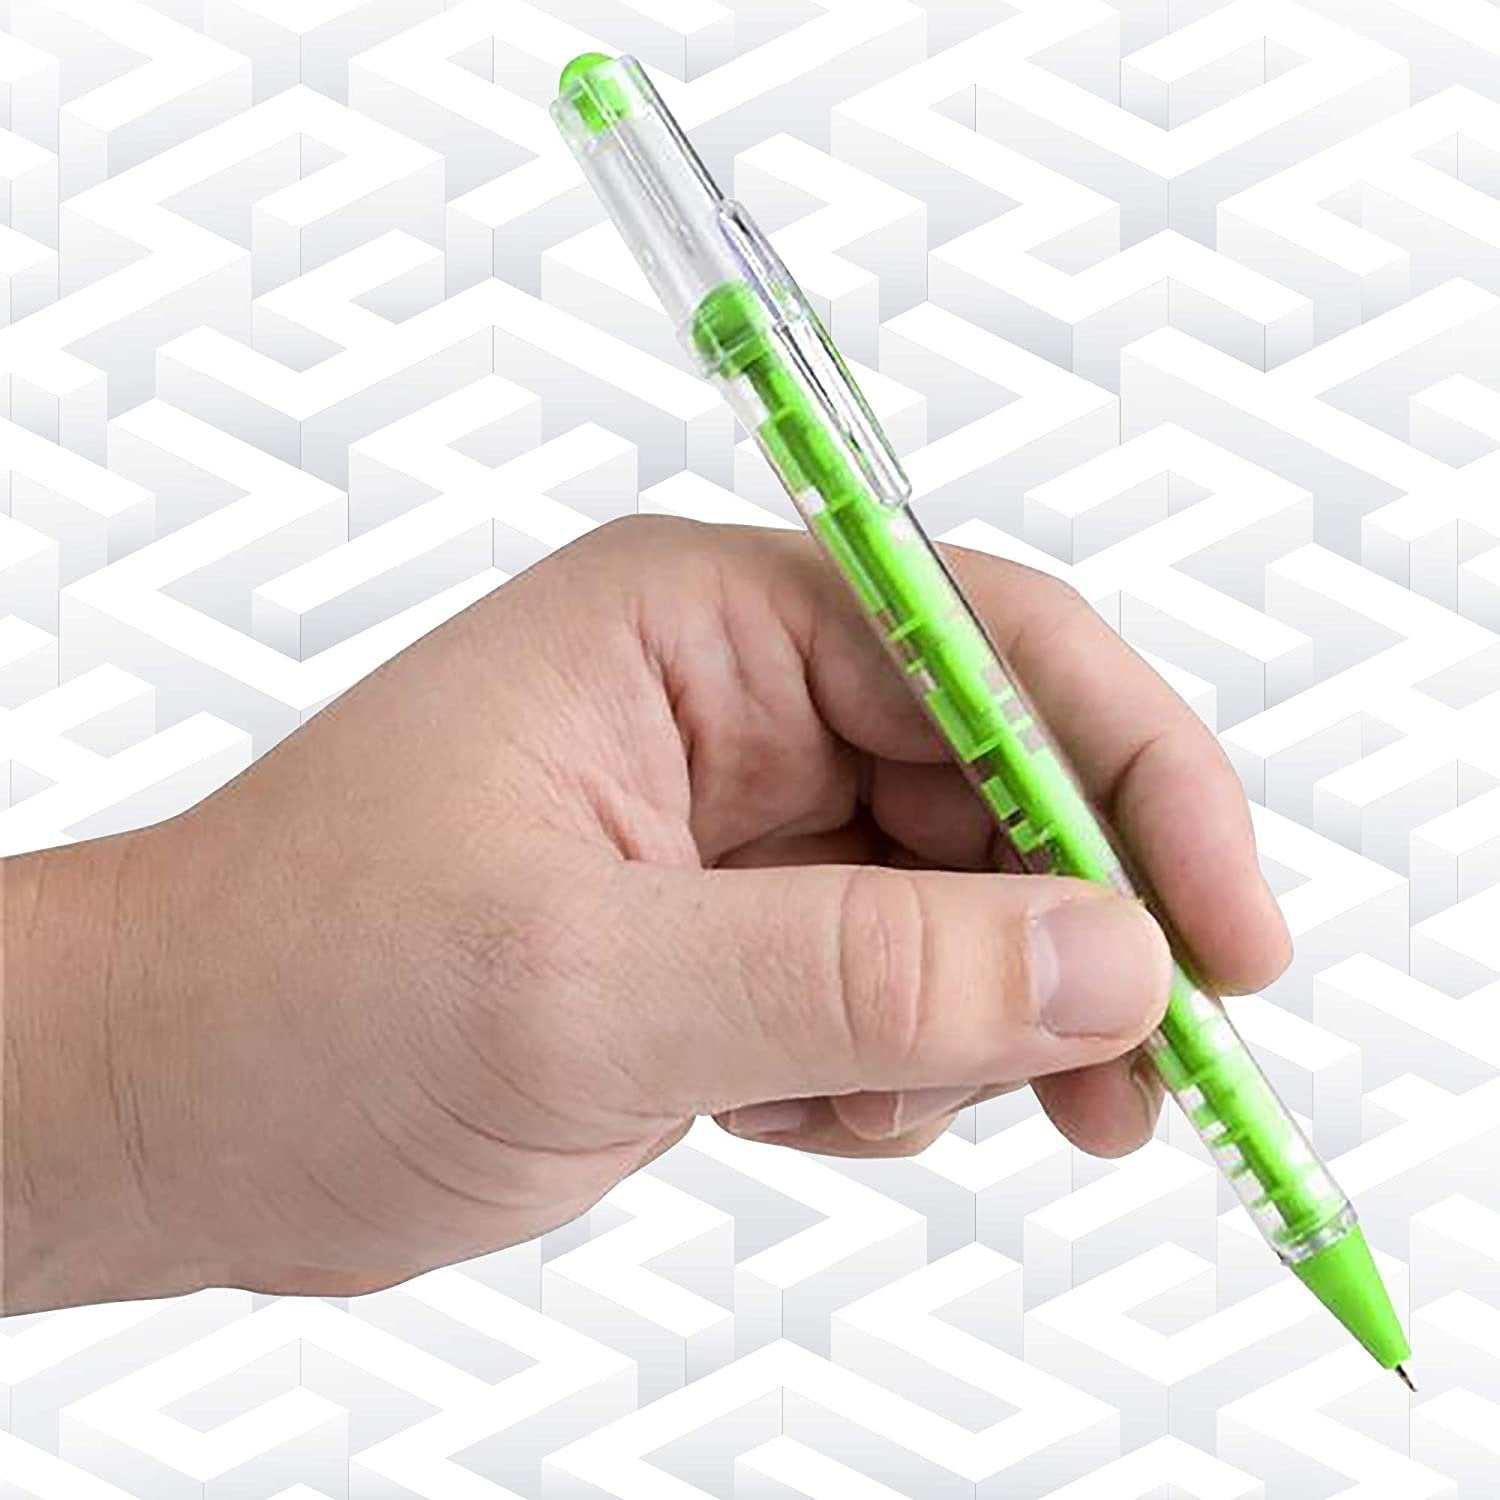 ArtCreativity 4-in-1 Multicolor Retractable Pen with a Cool